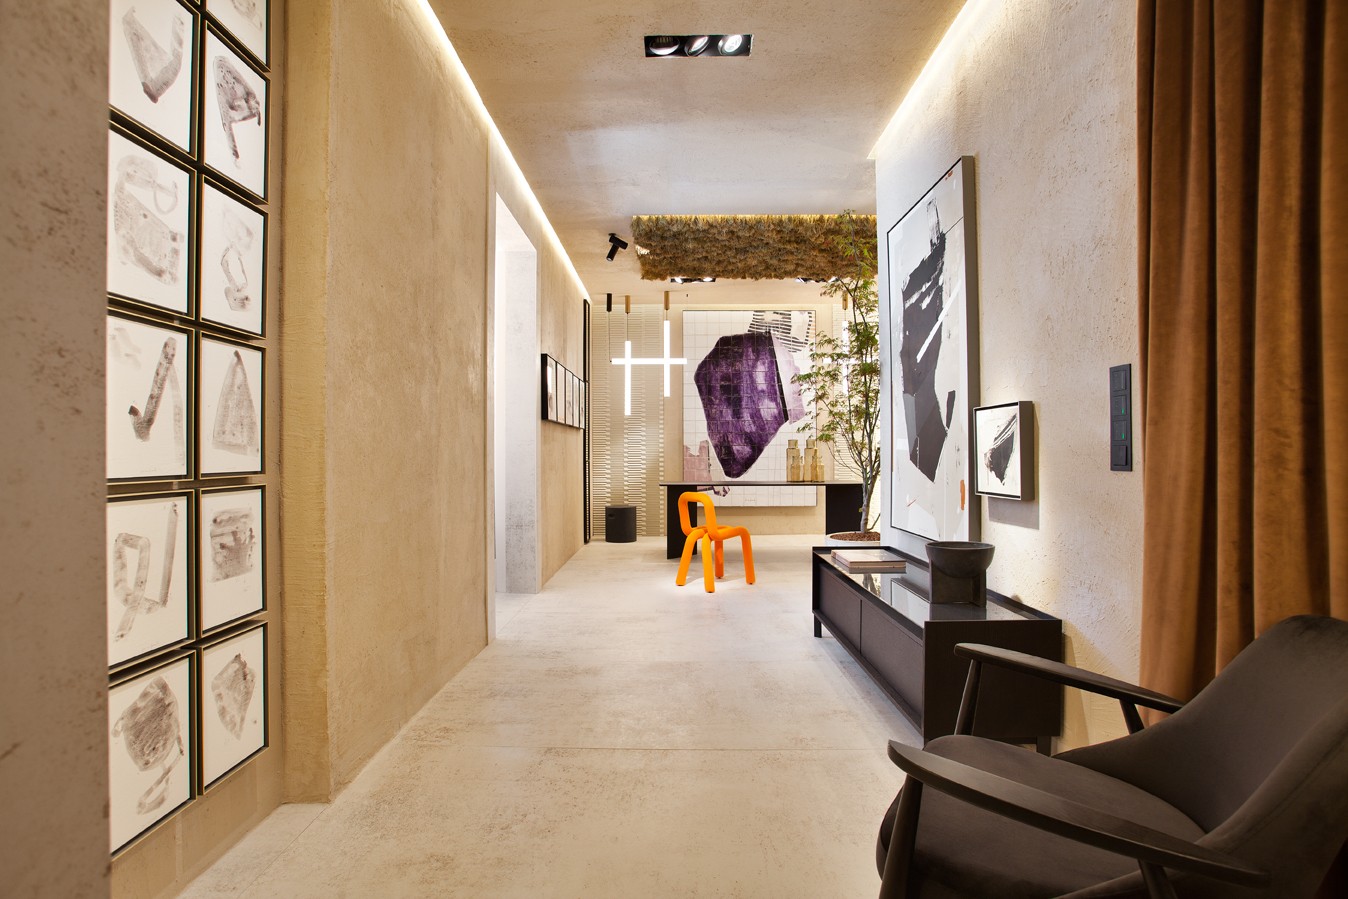 Image of casa decor 2022 espacio jaime jurado y monica bartolessis cafe de artista 01 in An artist’s studio where art reigns supreme - Cosentino